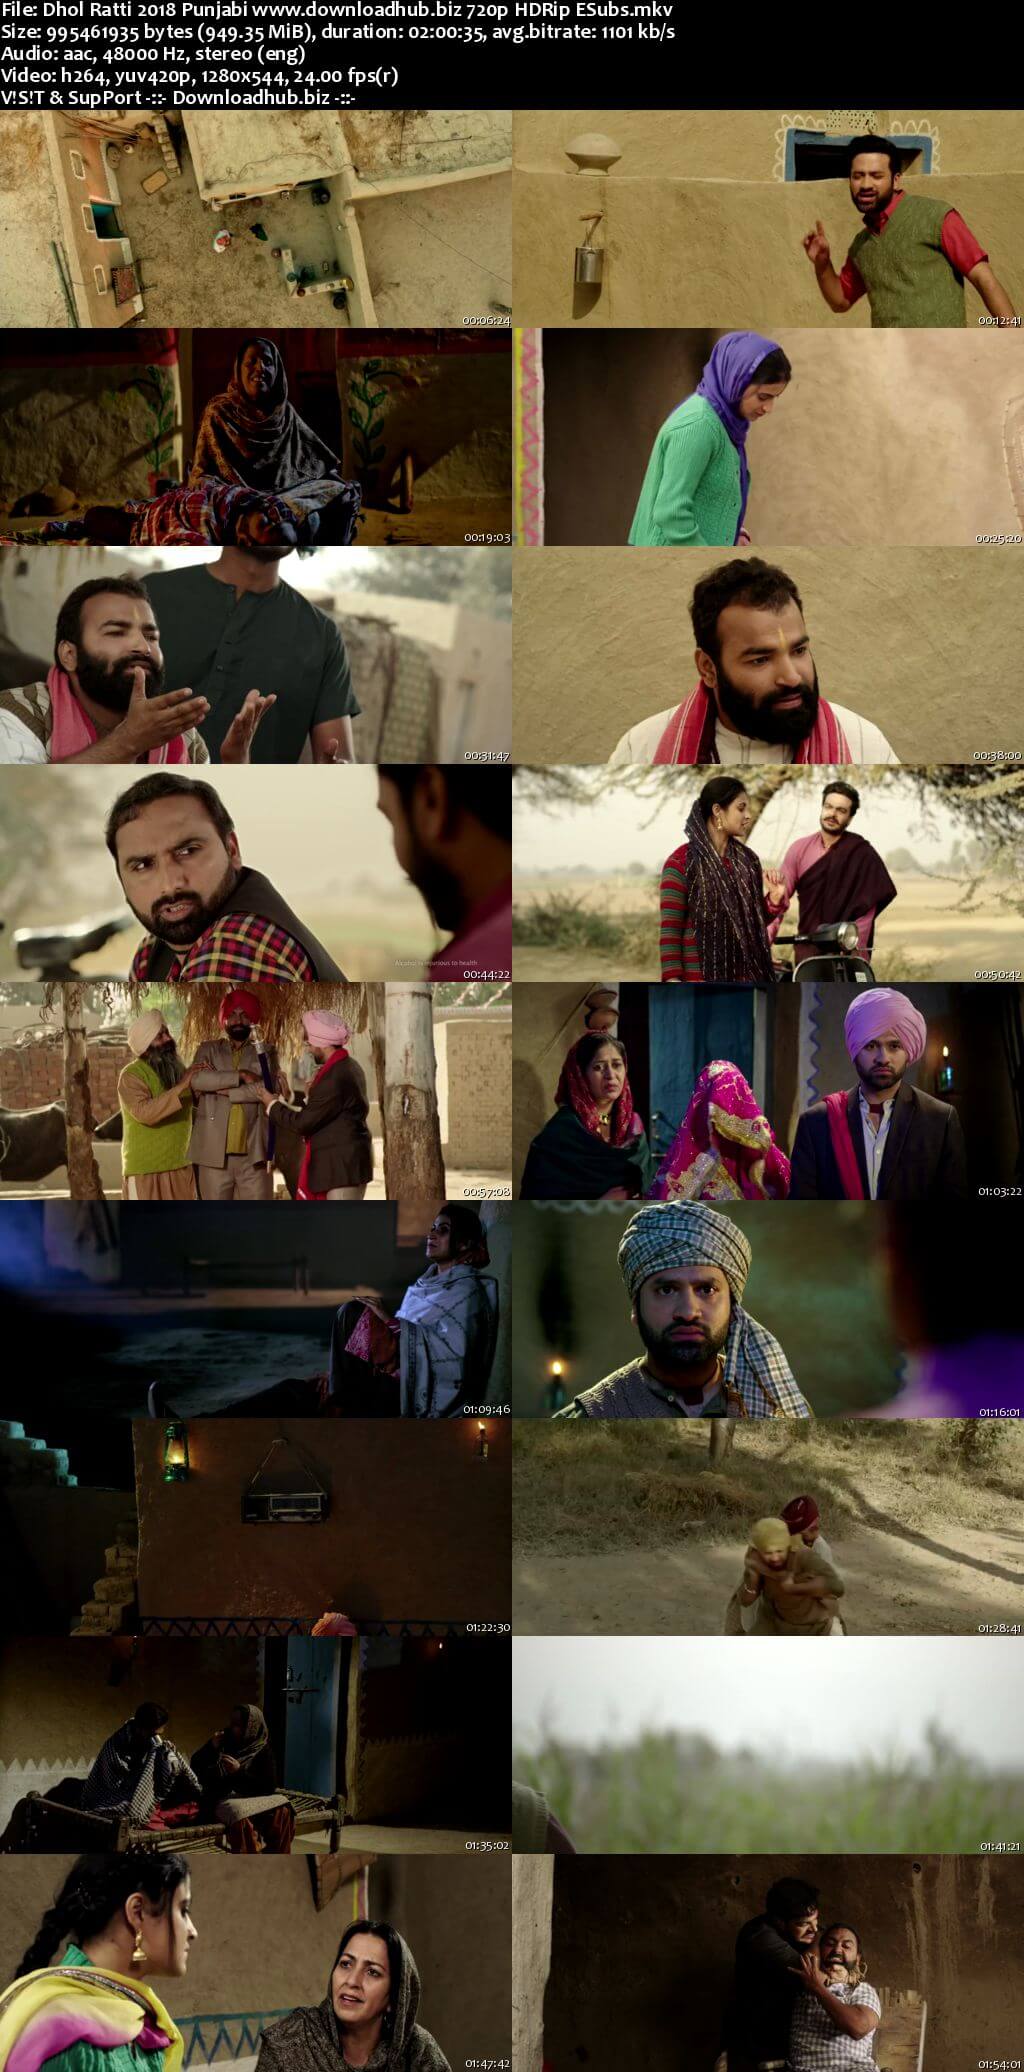 Dhol Ratti 2018 Punjabi 720p HDRip ESubs